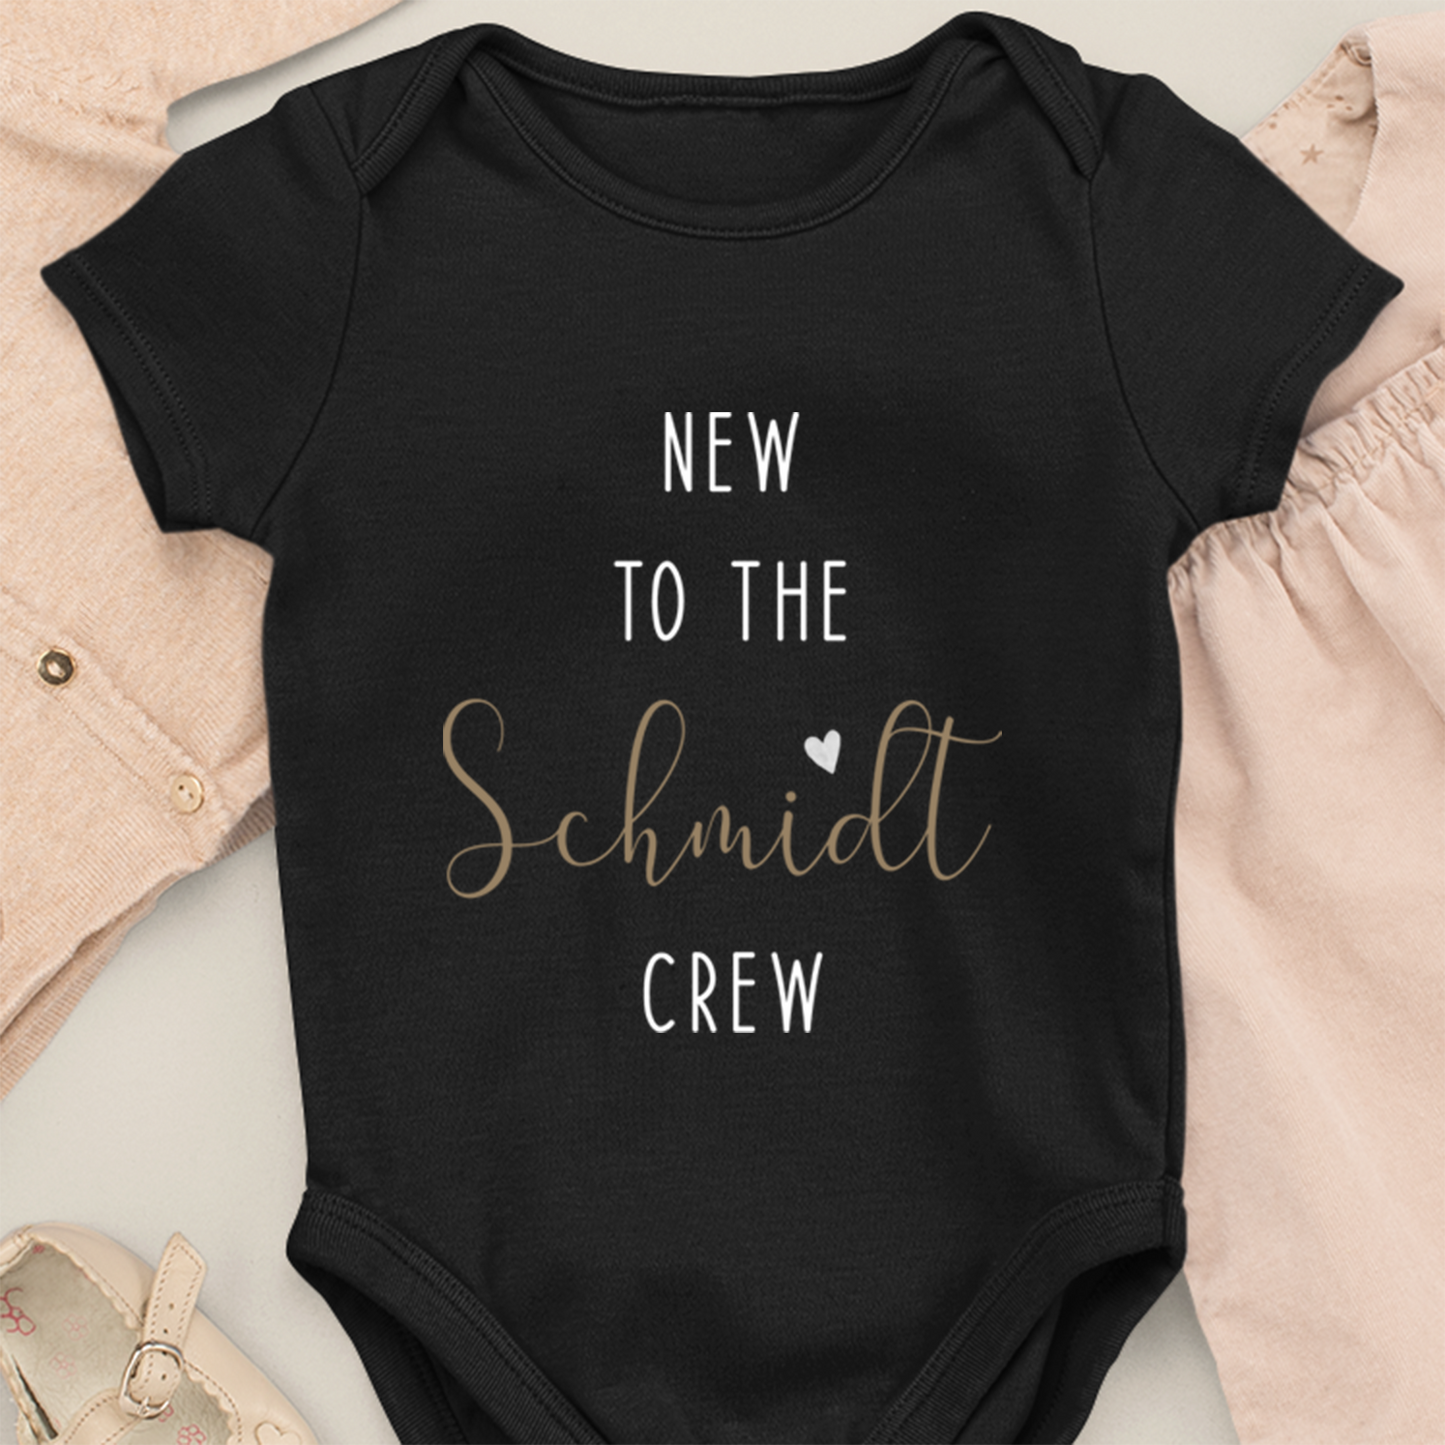 New to the "familie navn" Crew- Økologisk babykrop hvid - Personligt navn